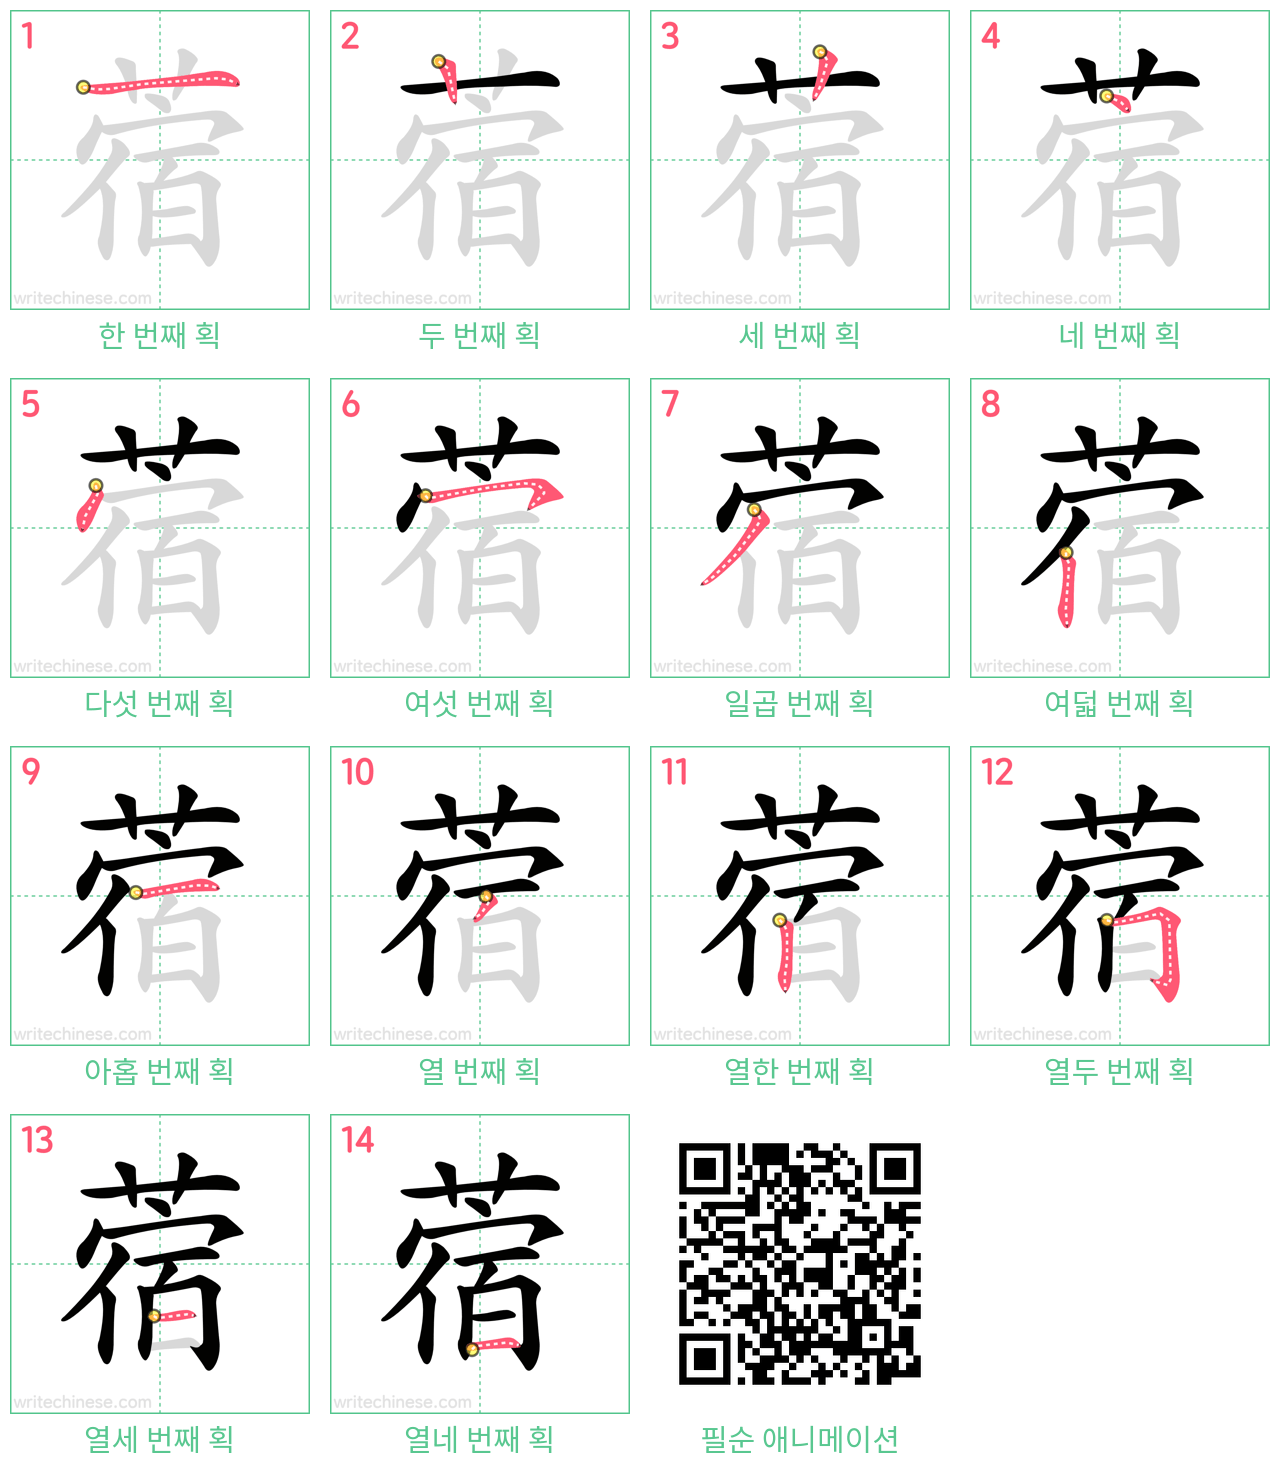 蓿 step-by-step stroke order diagrams